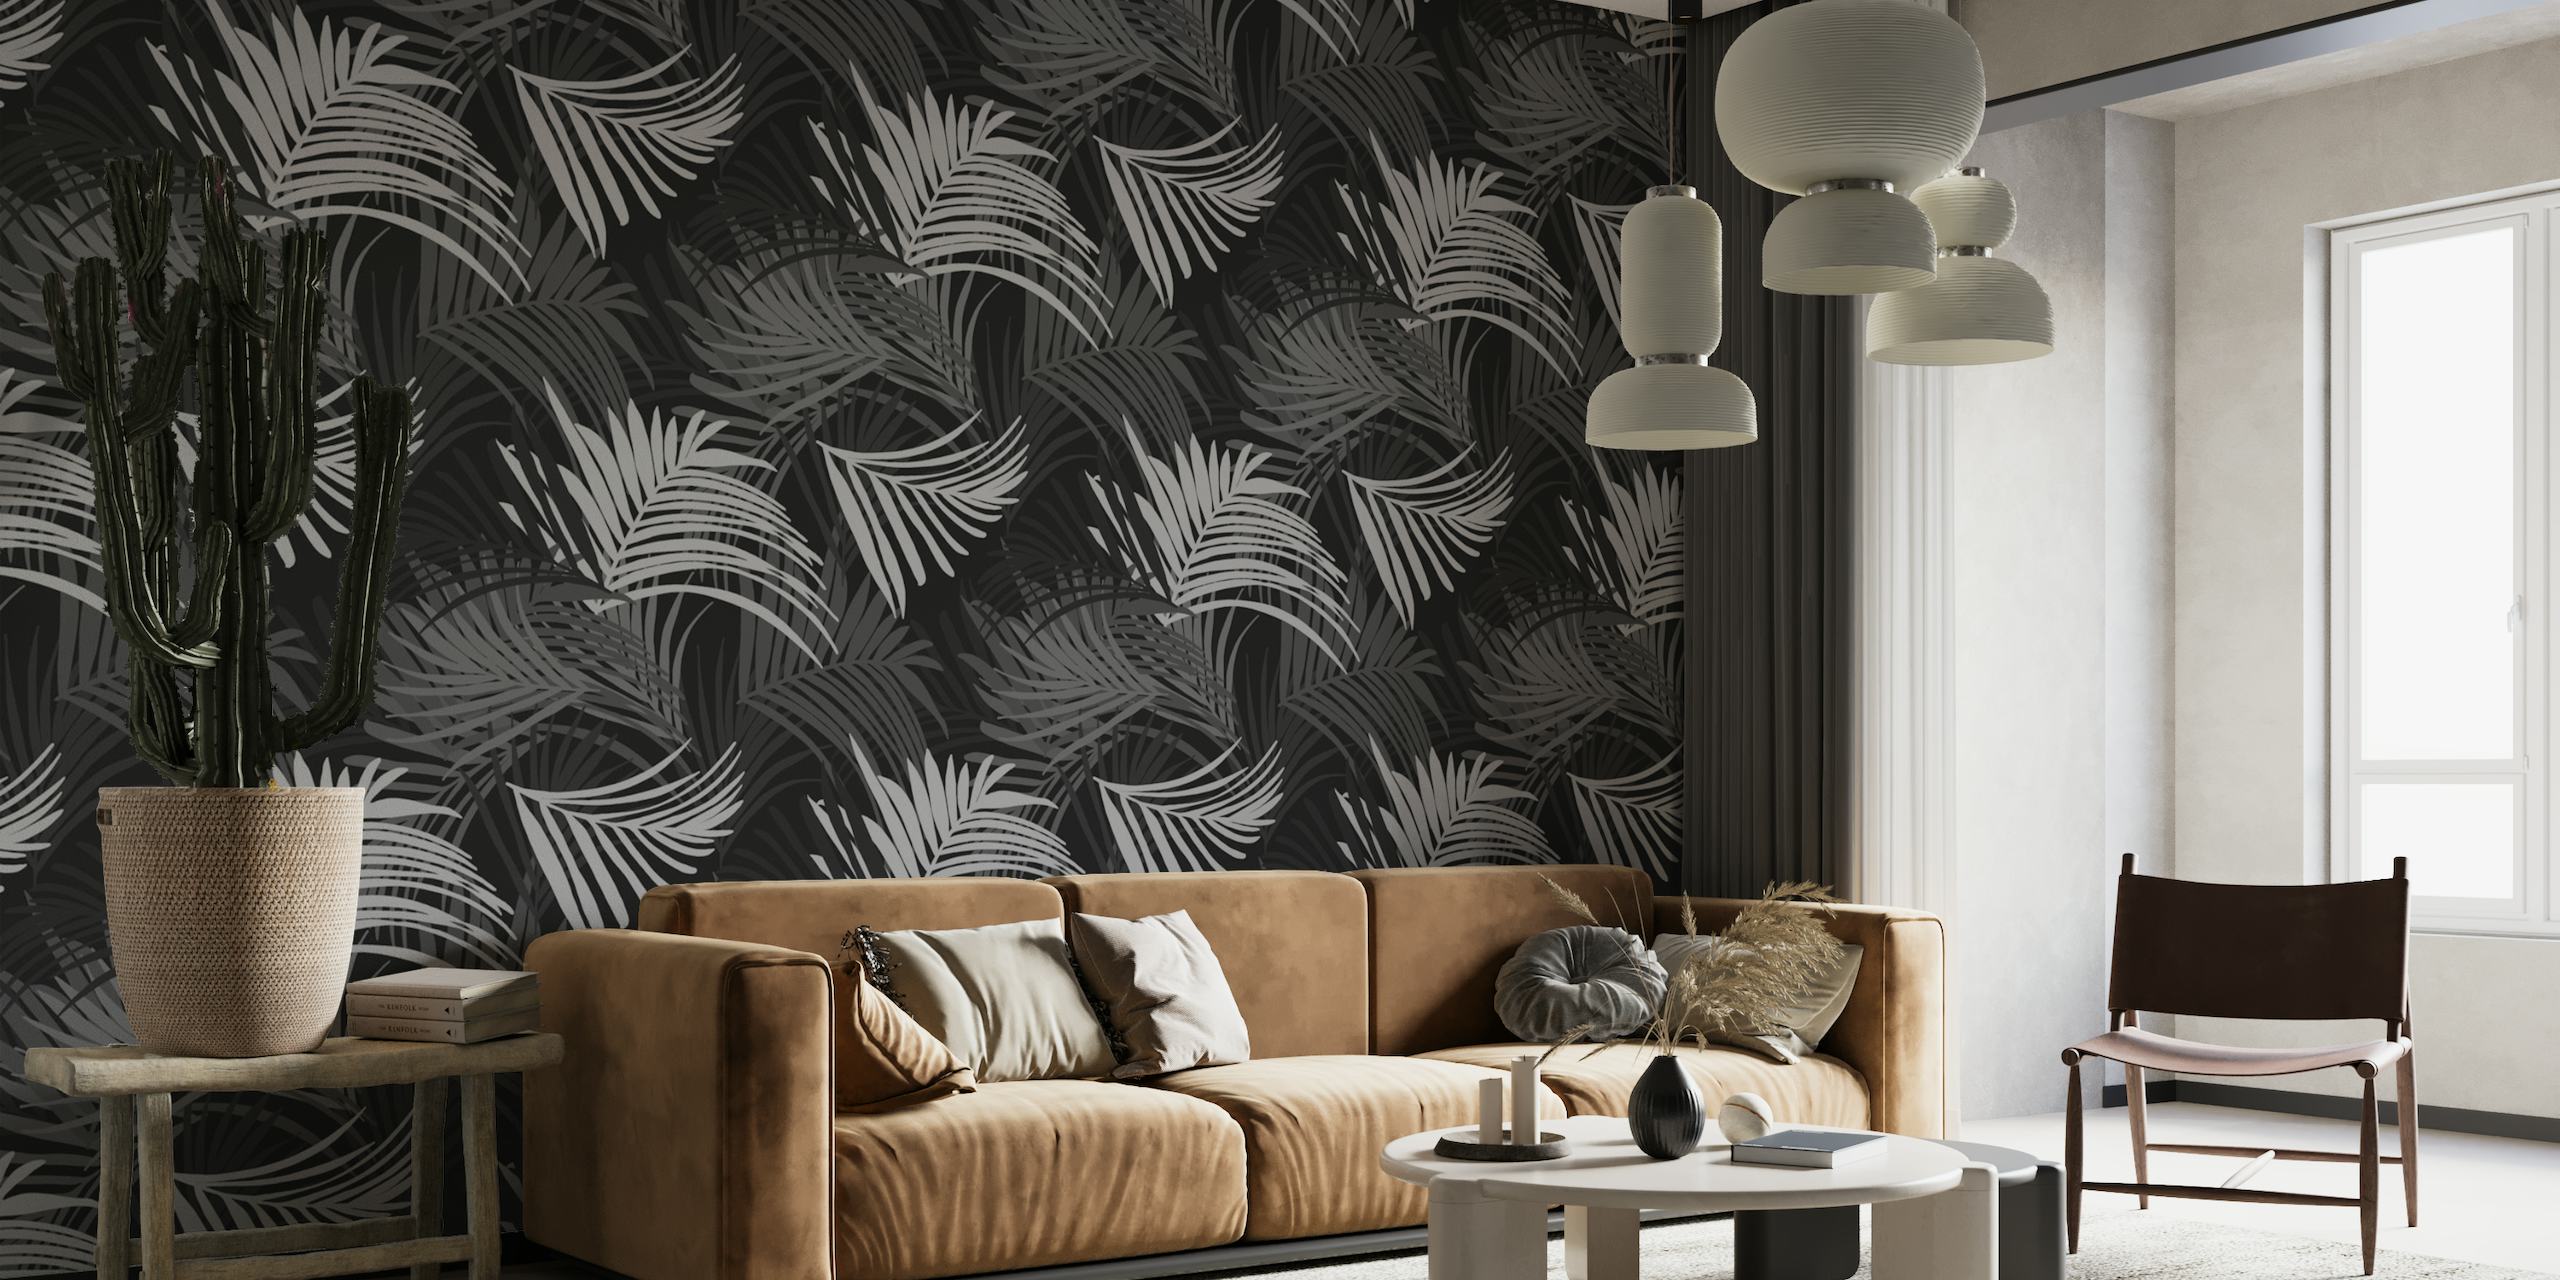 Czarno-biała fototapeta z tropikalnym wzorem liści palmowych, idealna do stworzenia spokojnego motywu dżungli.